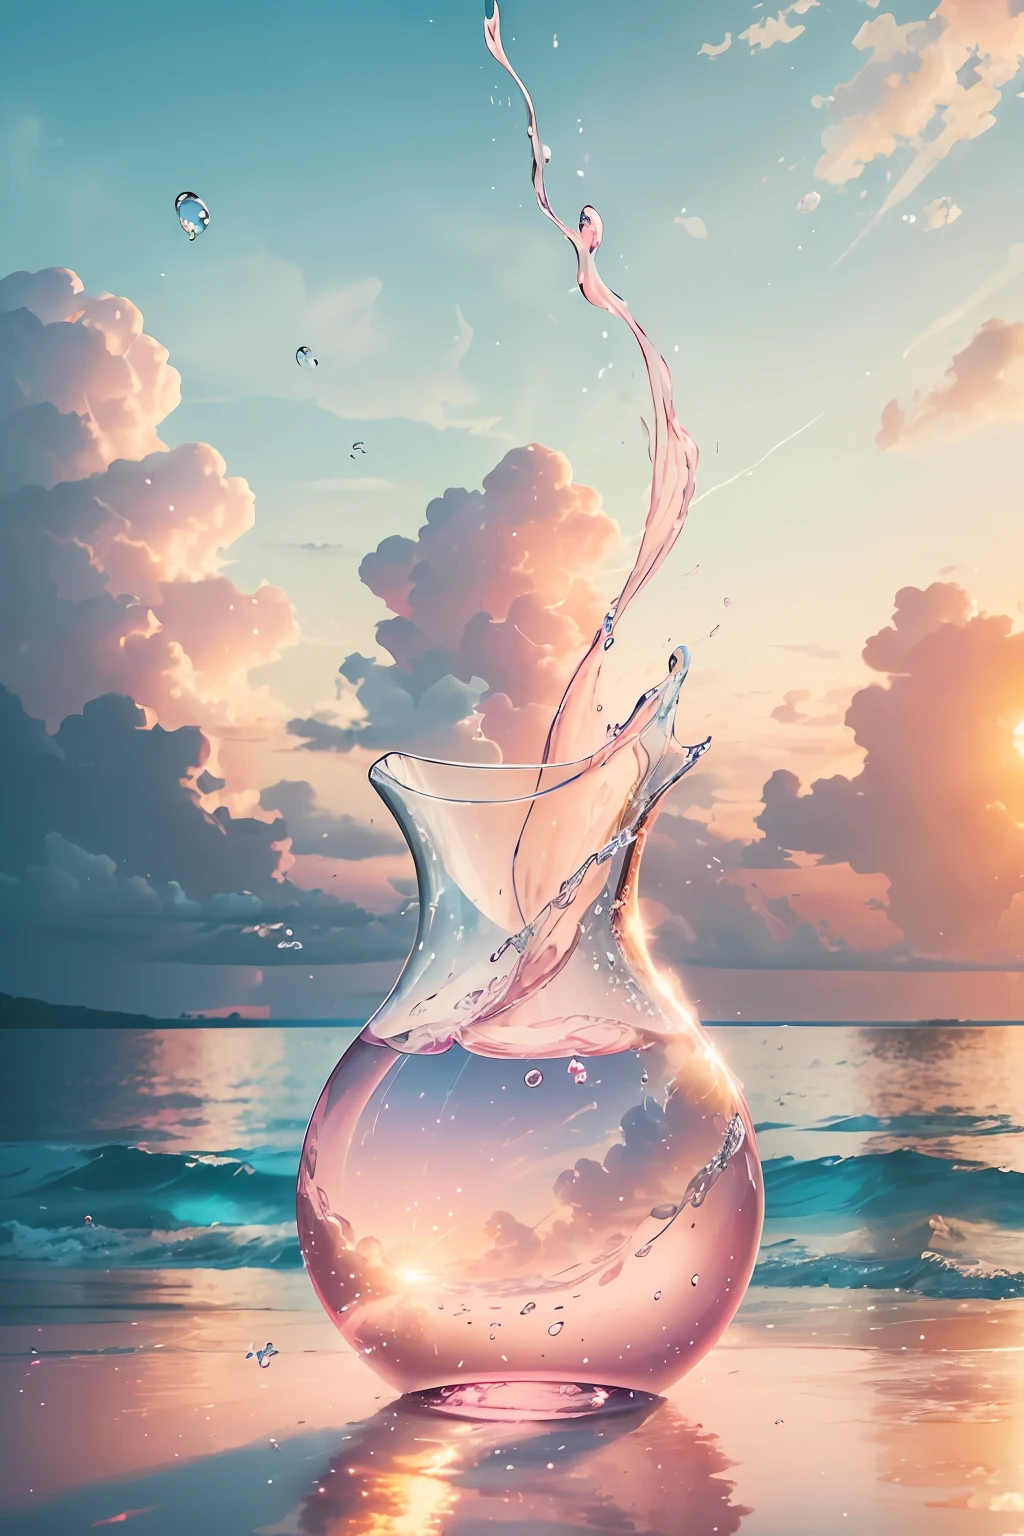 Crea un 4K 9:16 imagen que representa un impresionante amanecer en una playa tropical, con olas suaves y palmeras a lo largo de la costa. La paleta de colores debe ser vibrante y transmitir una sensación de renovación y energía positiva..  Imagina un jarrón de vidrio transparente lleno de una suave nube rosa. La nube está formada por pequeñas burbujas, cada uno reflejando una chispa de luz. Puedes ver que las burbujas se mueven constantemente, Moviéndose y girando dentro del jarrón. Pero a pesar de su naturaleza efímera, Dejan una impresión duradera en el jarrón en sí.. A medida que la luz se filtra a través de la nube rosa, Proyecta un suave resplandor sobre el vidrio, cambiando su esencia misma. Al igual que las burbujas, Los momentos de alegría pueden ser fugaces y temporales, Pero la impresión que dejan en tu alma es como la suave nube rosa, iluminando tu propio ser y cambiándote para siempre.